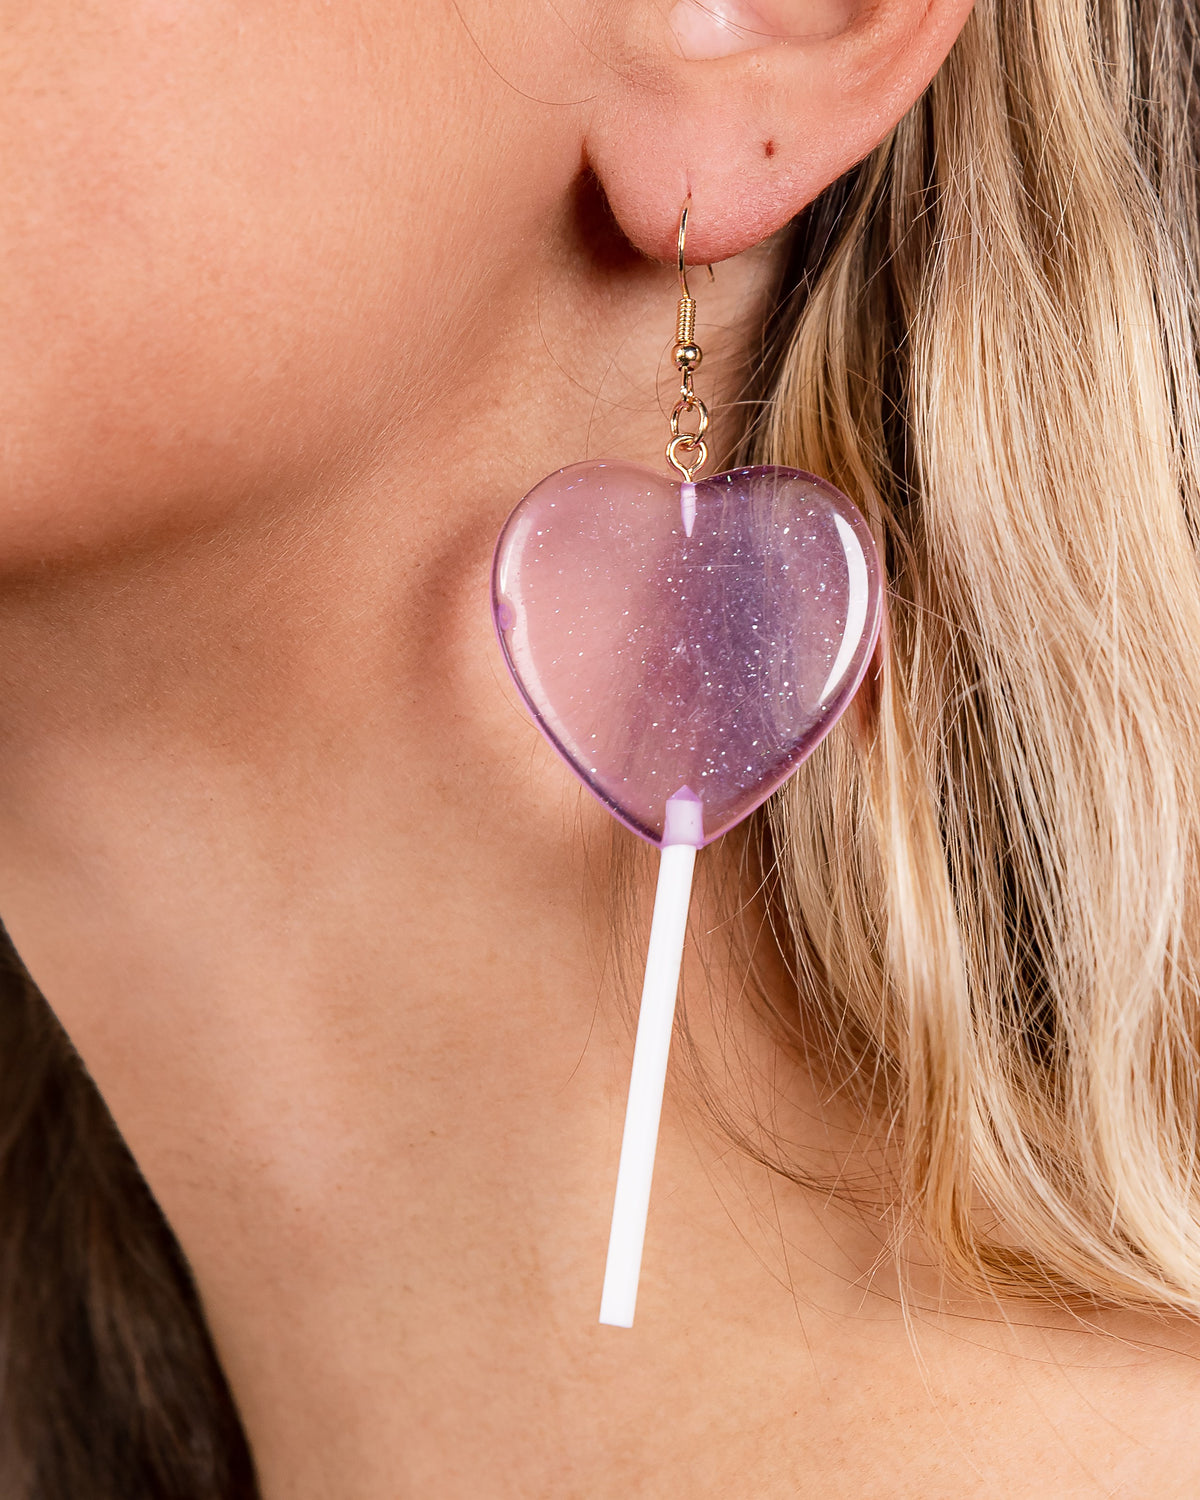 How Many Licks? Heart Lollipop Earrings